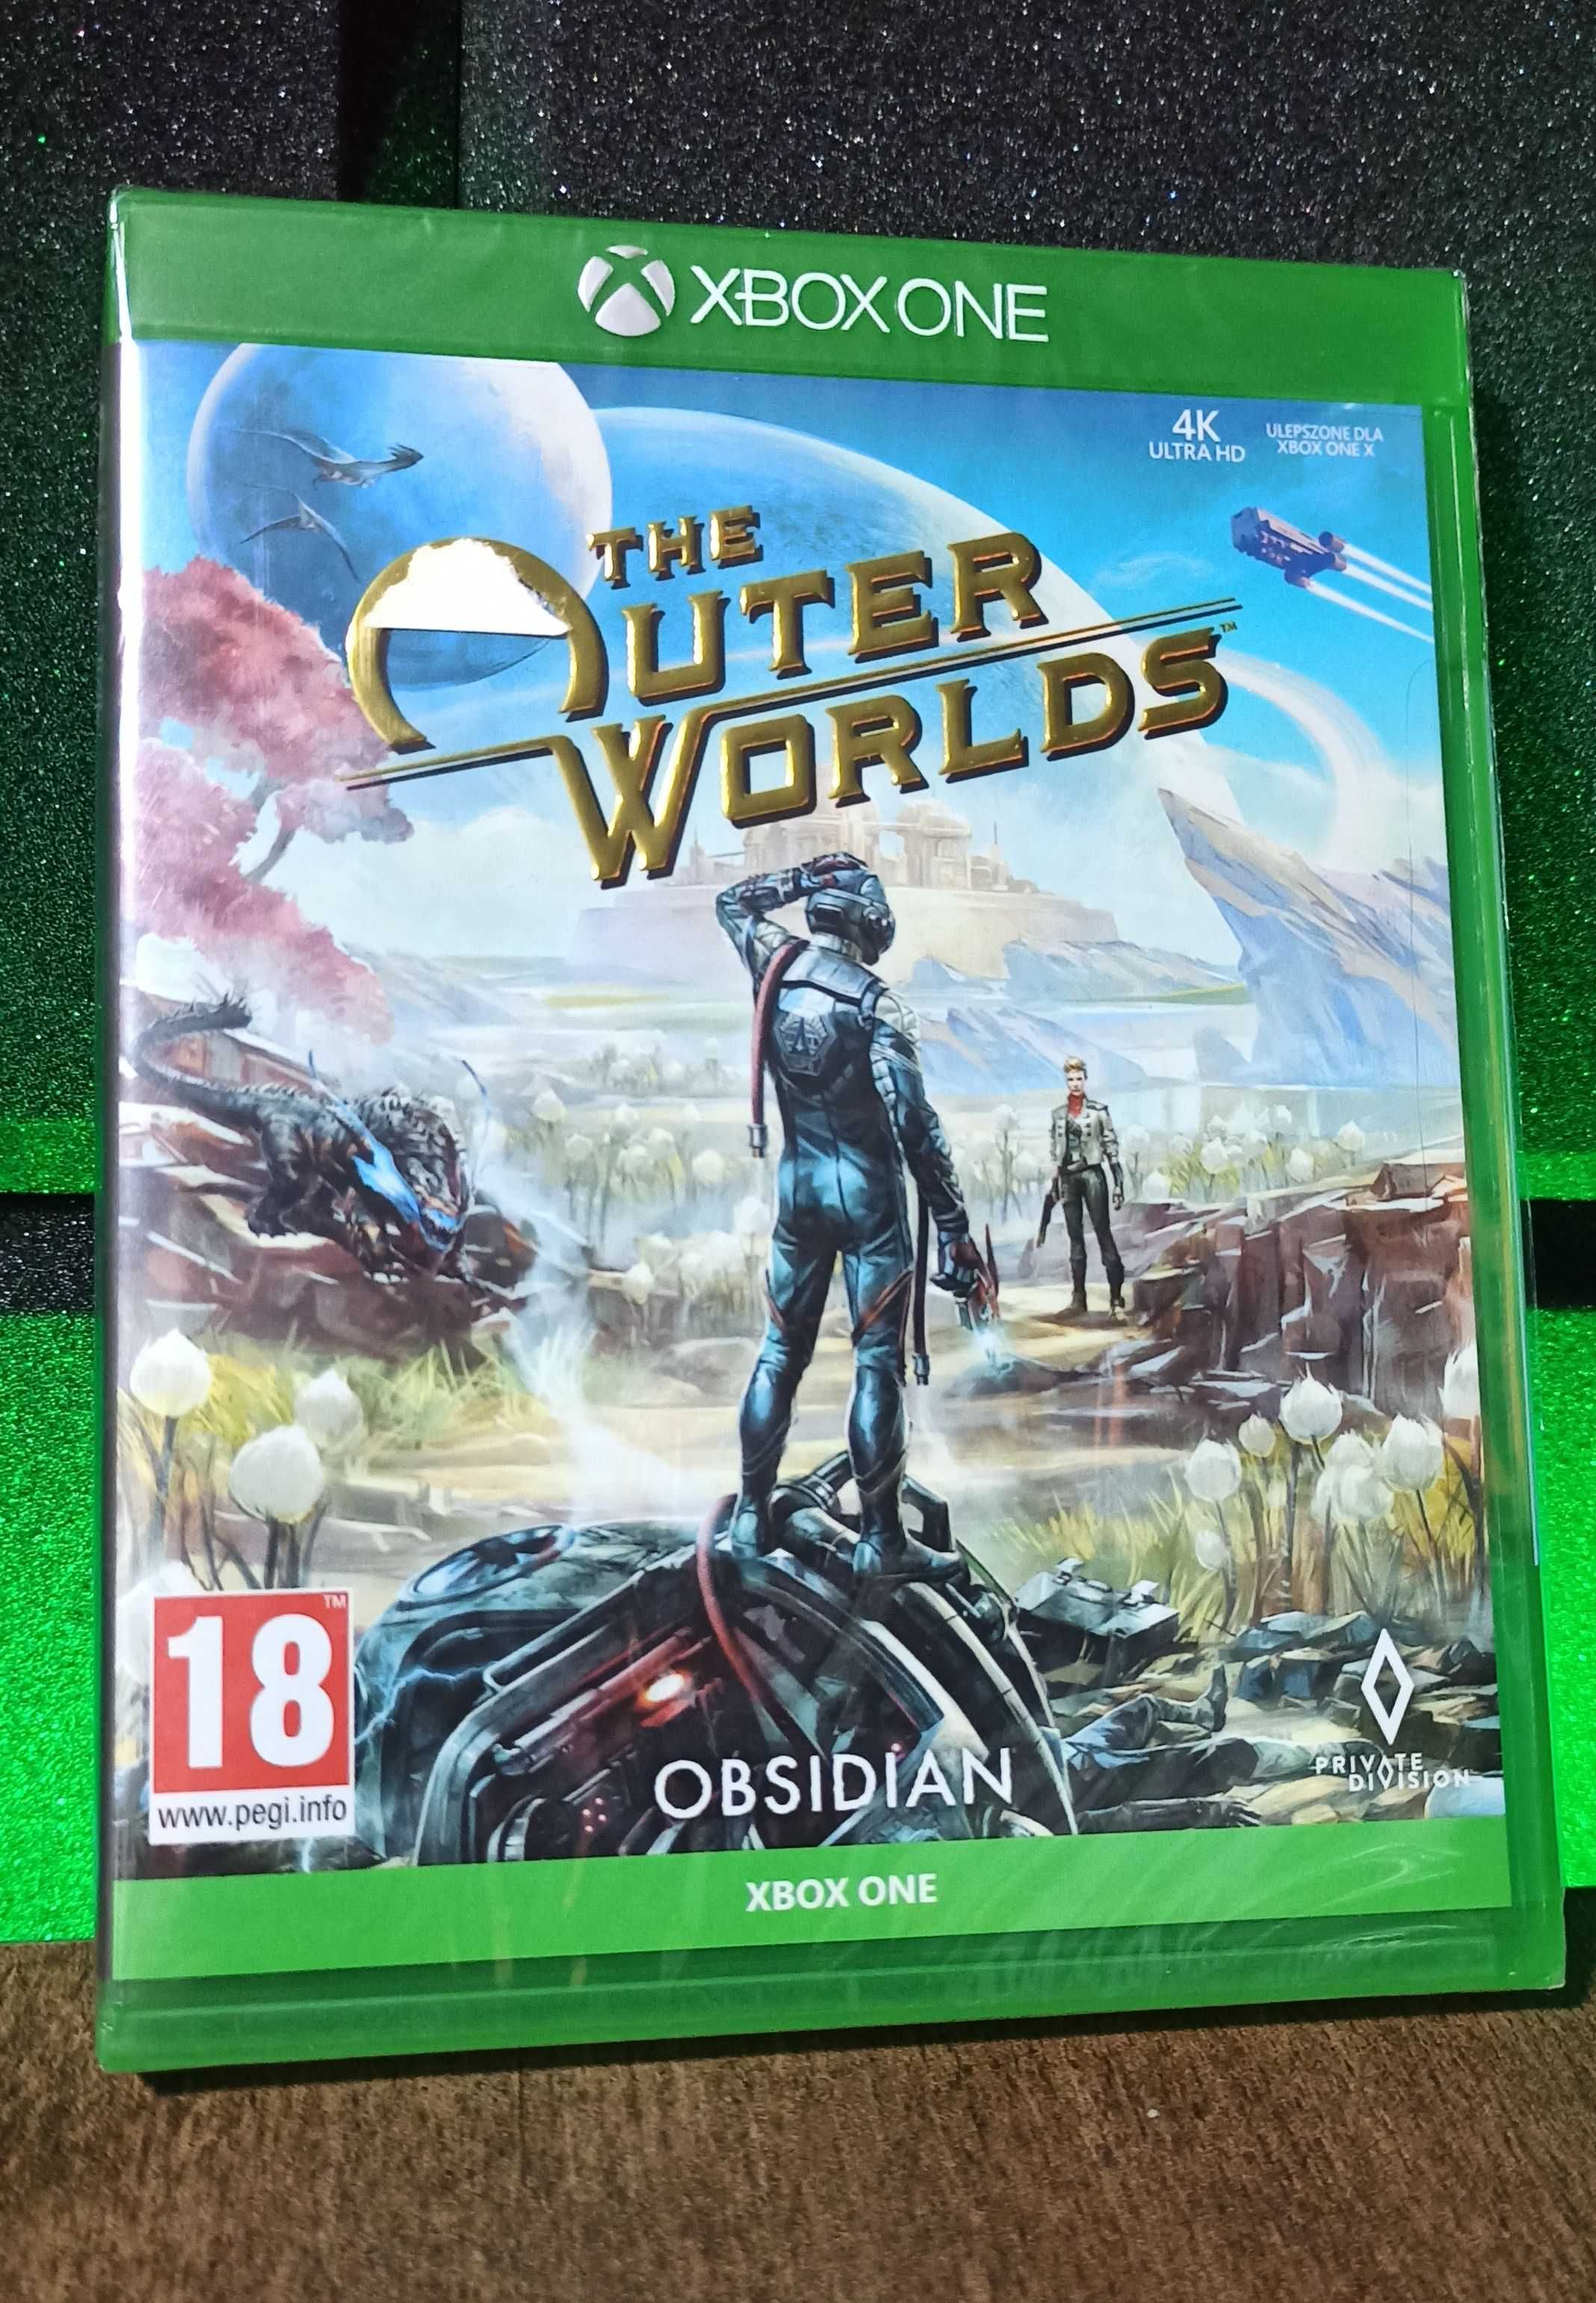 The Outer Worlds PL Xbox One S / Series X - świetna przygodówka